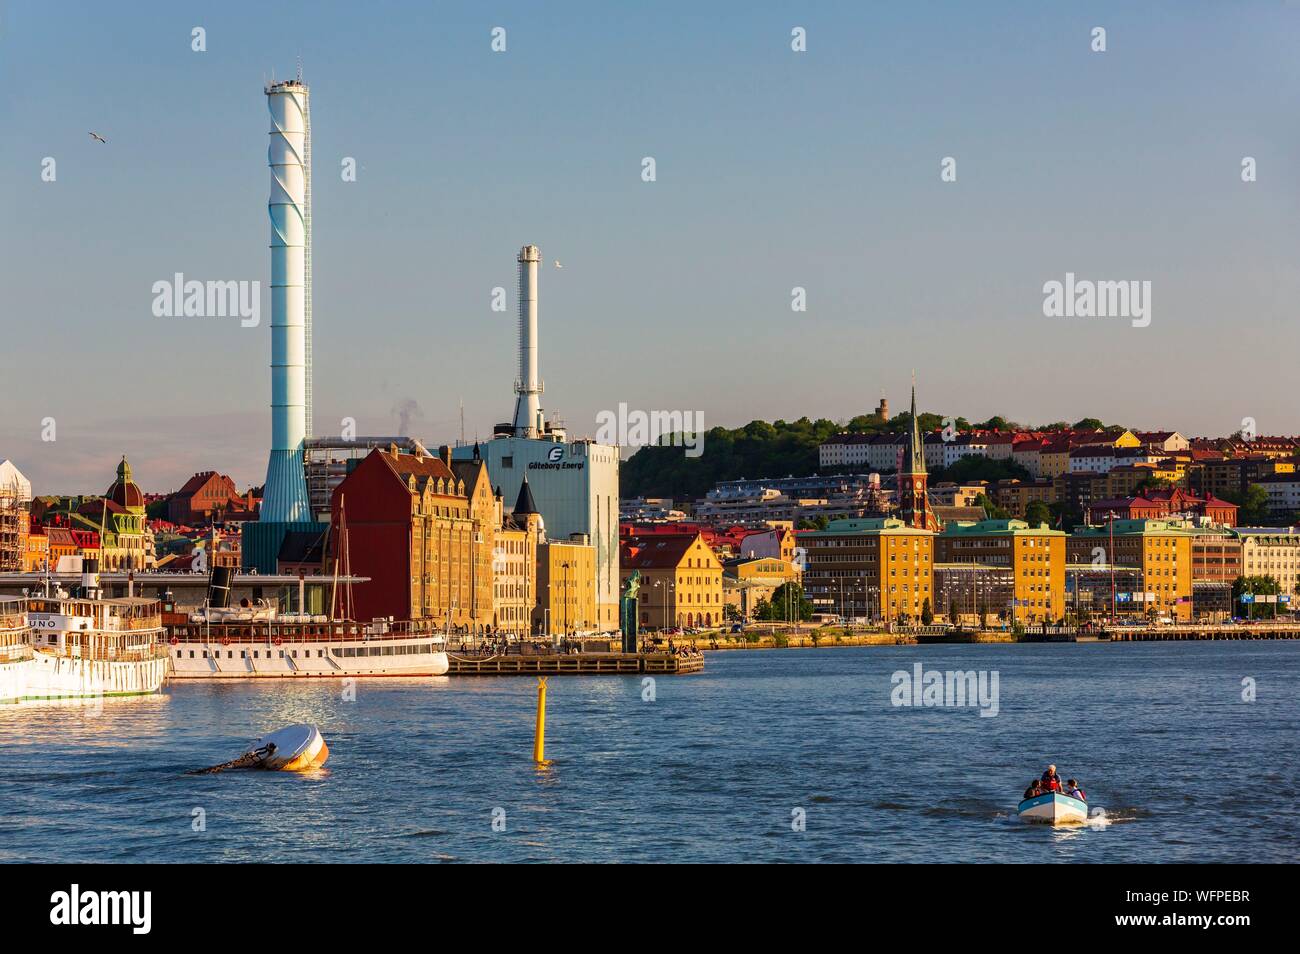 La Svezia, Vastra Gotaland, Goteborg (Göteborg), vista della centrale a energia termica della città e l'Oscar Fredrik chiesa Foto Stock